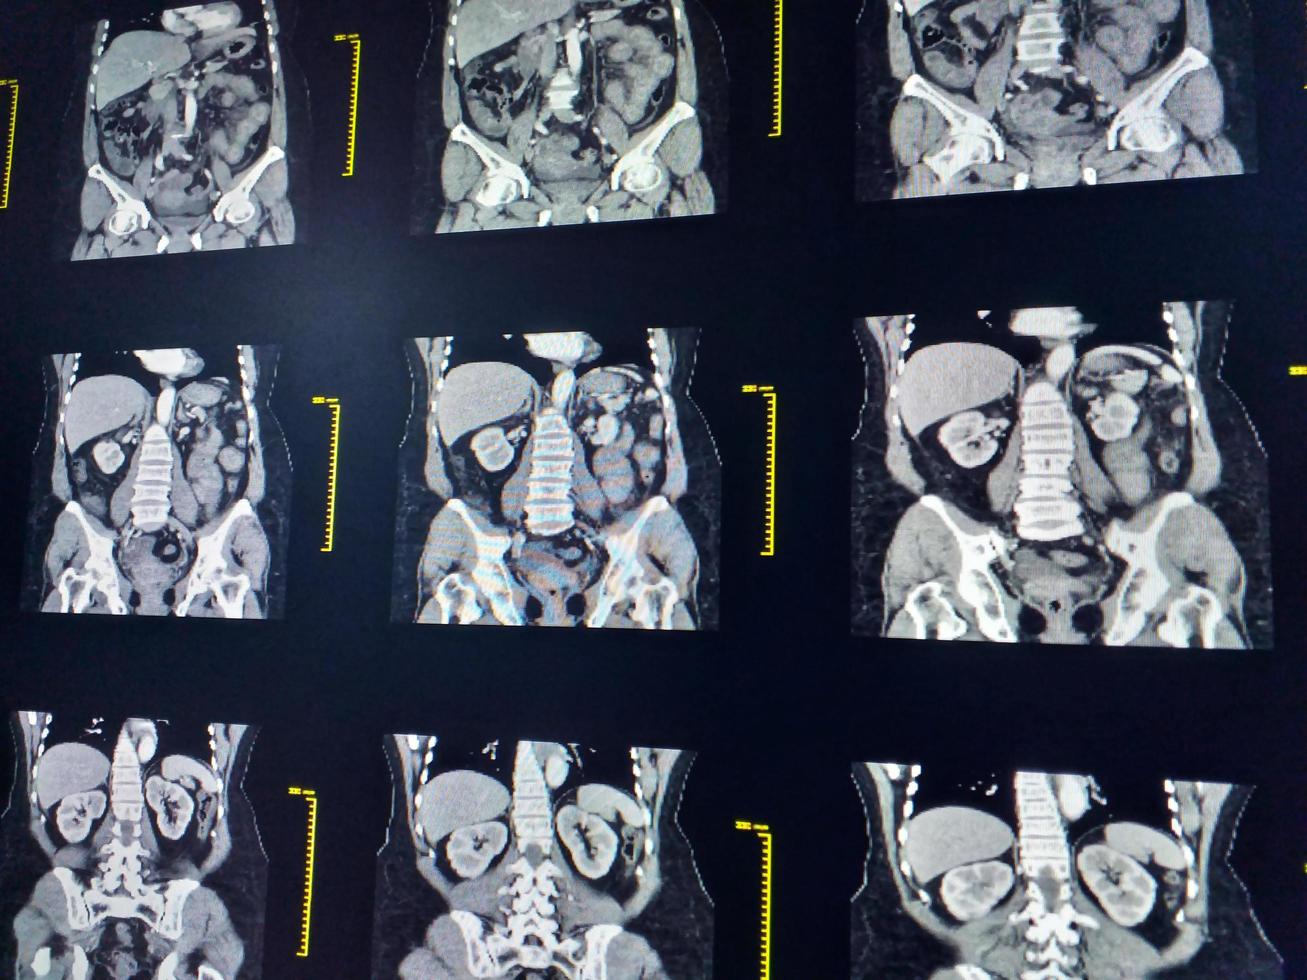 tomografía computarizada de abdomen completo con vista coronal de medio de contraste. concepto de tecnología médica. foto